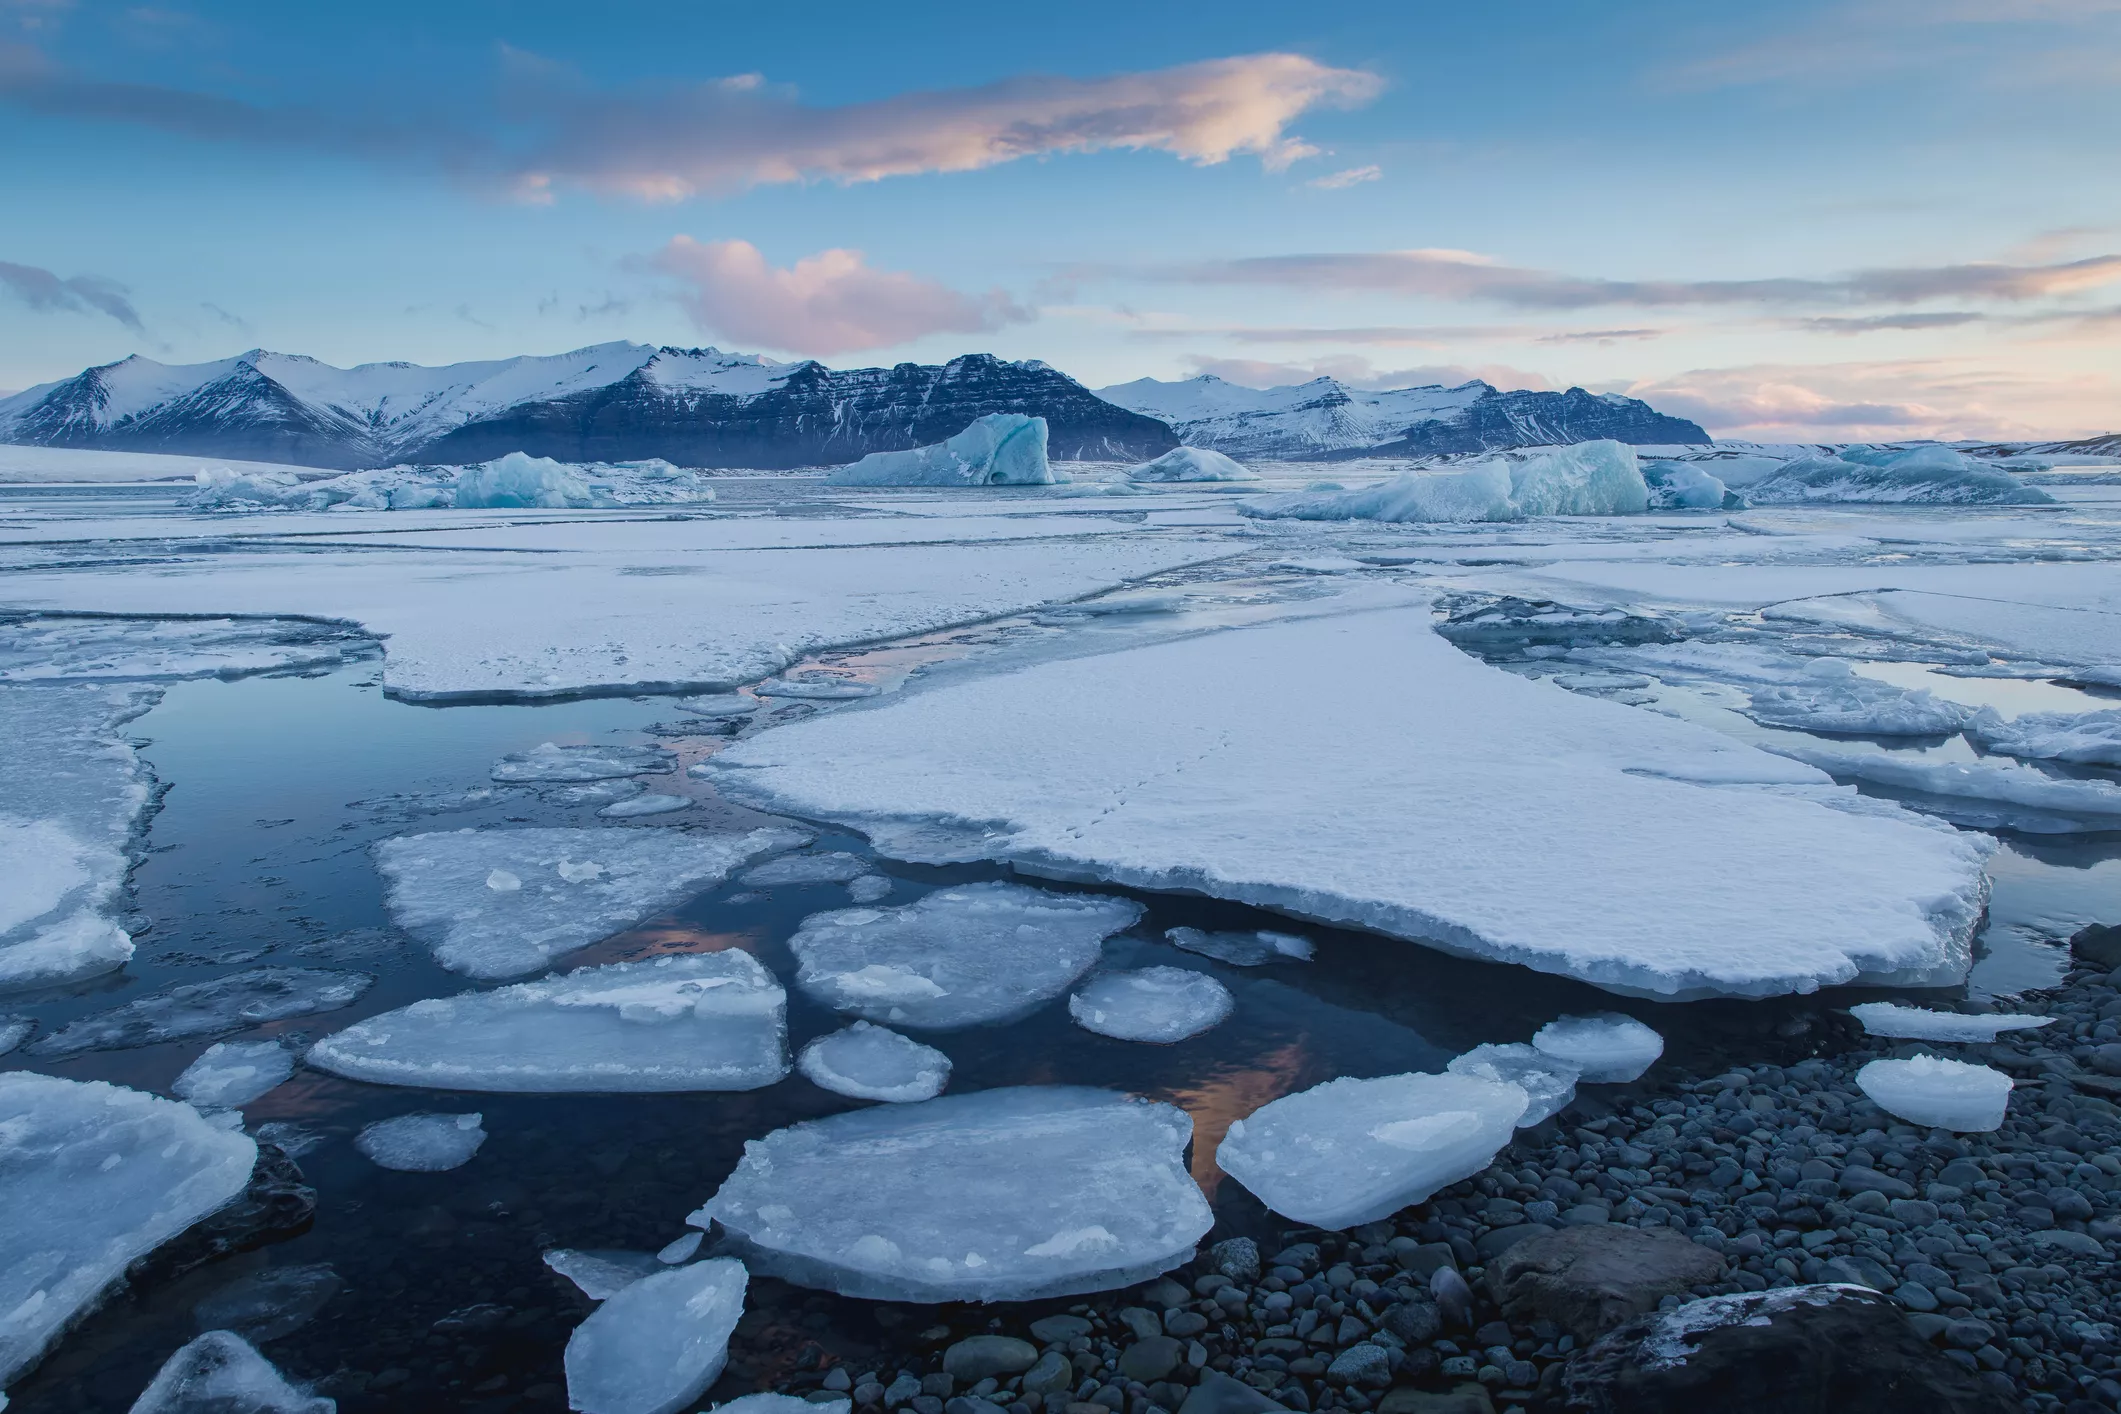 Els creuers de luxe faran la ruta de l’Àrtic gràcies al canvi climàtic i a la baixada de temperatures